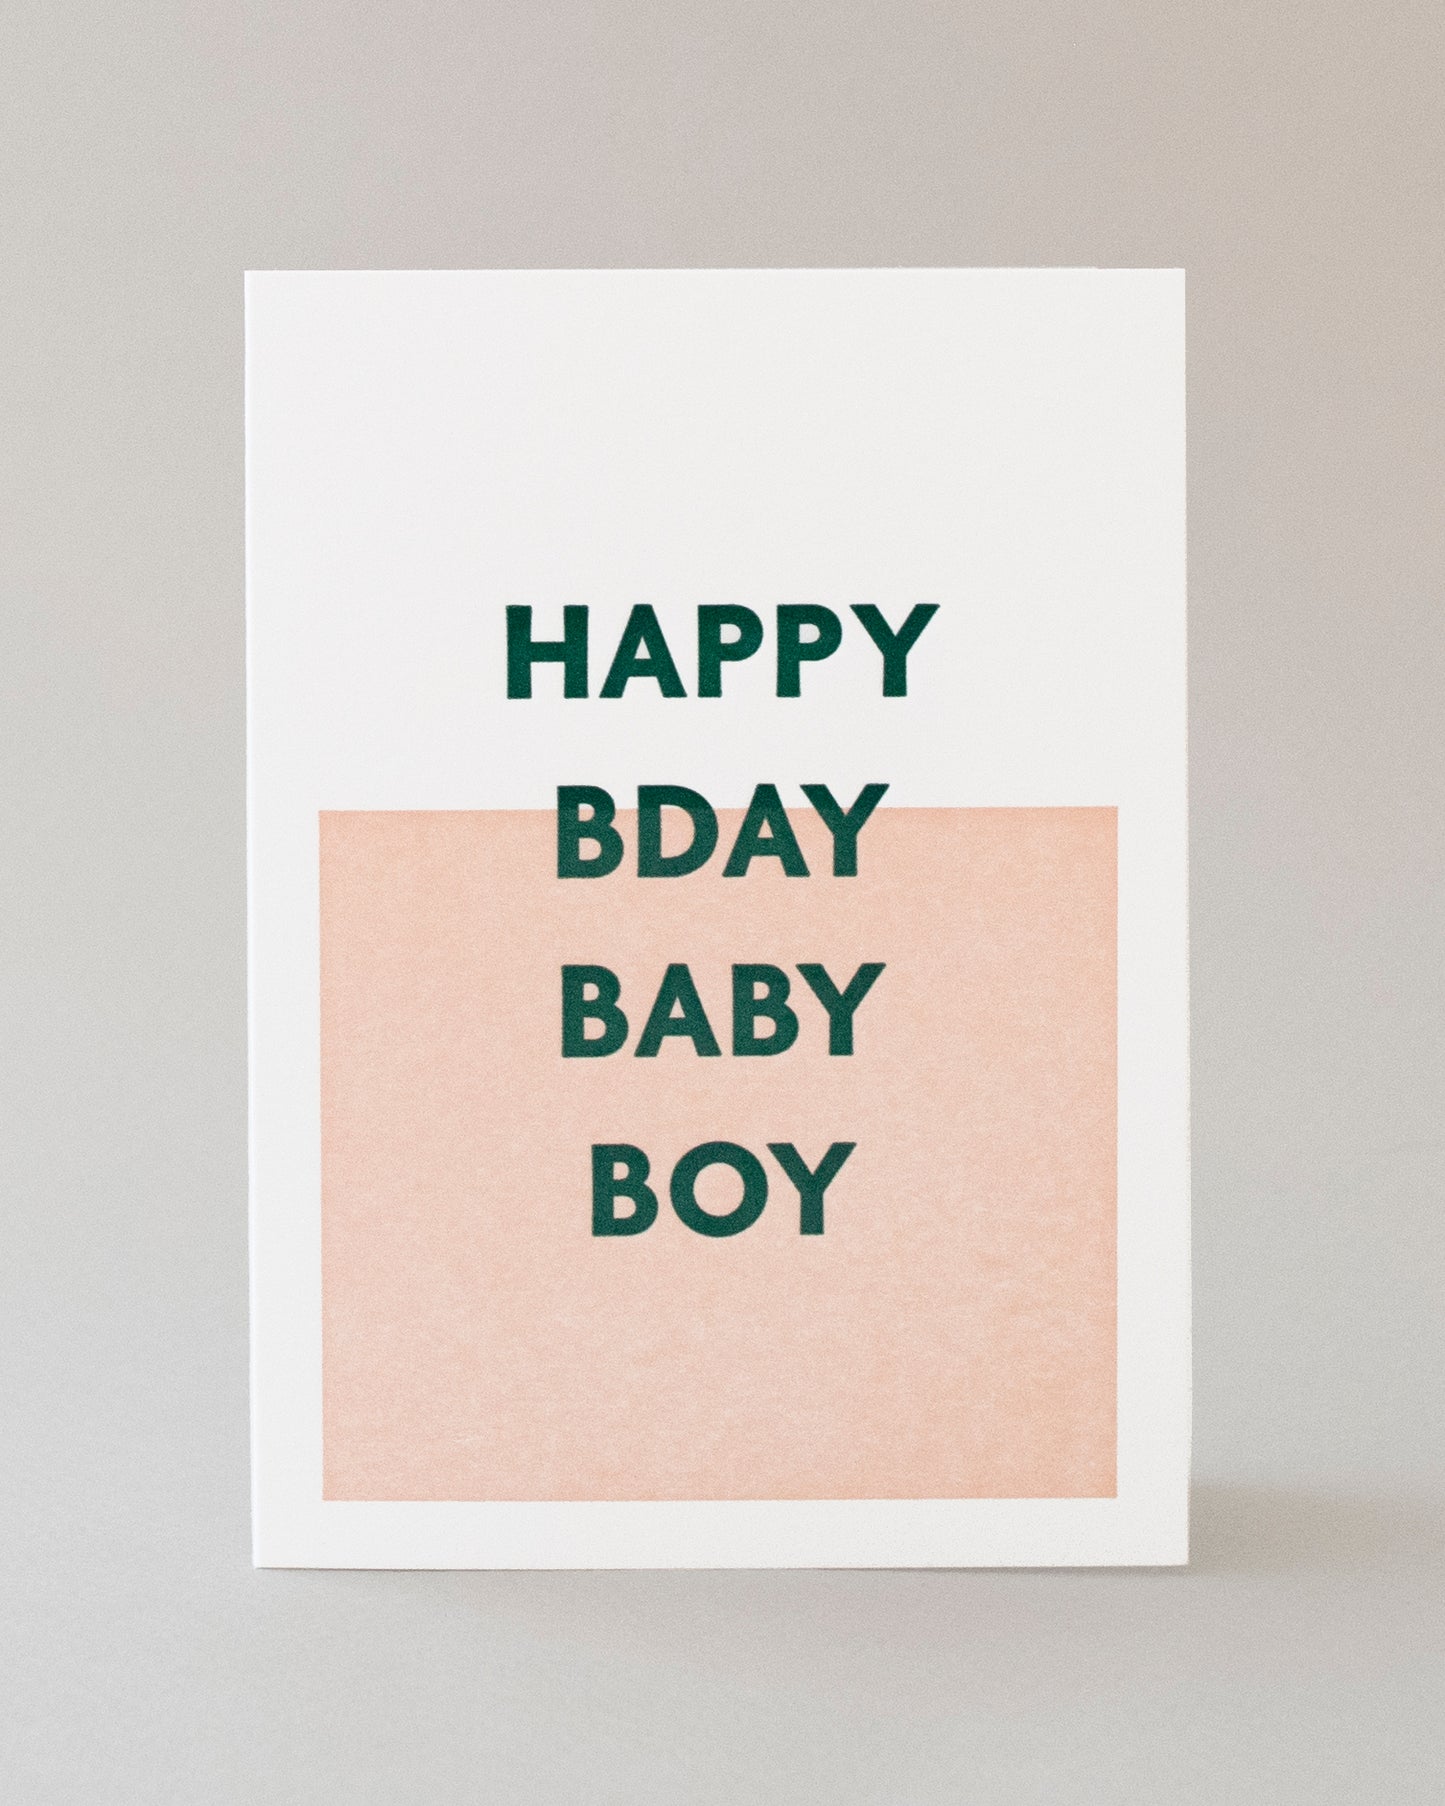 HBD Baby Boy Card #118